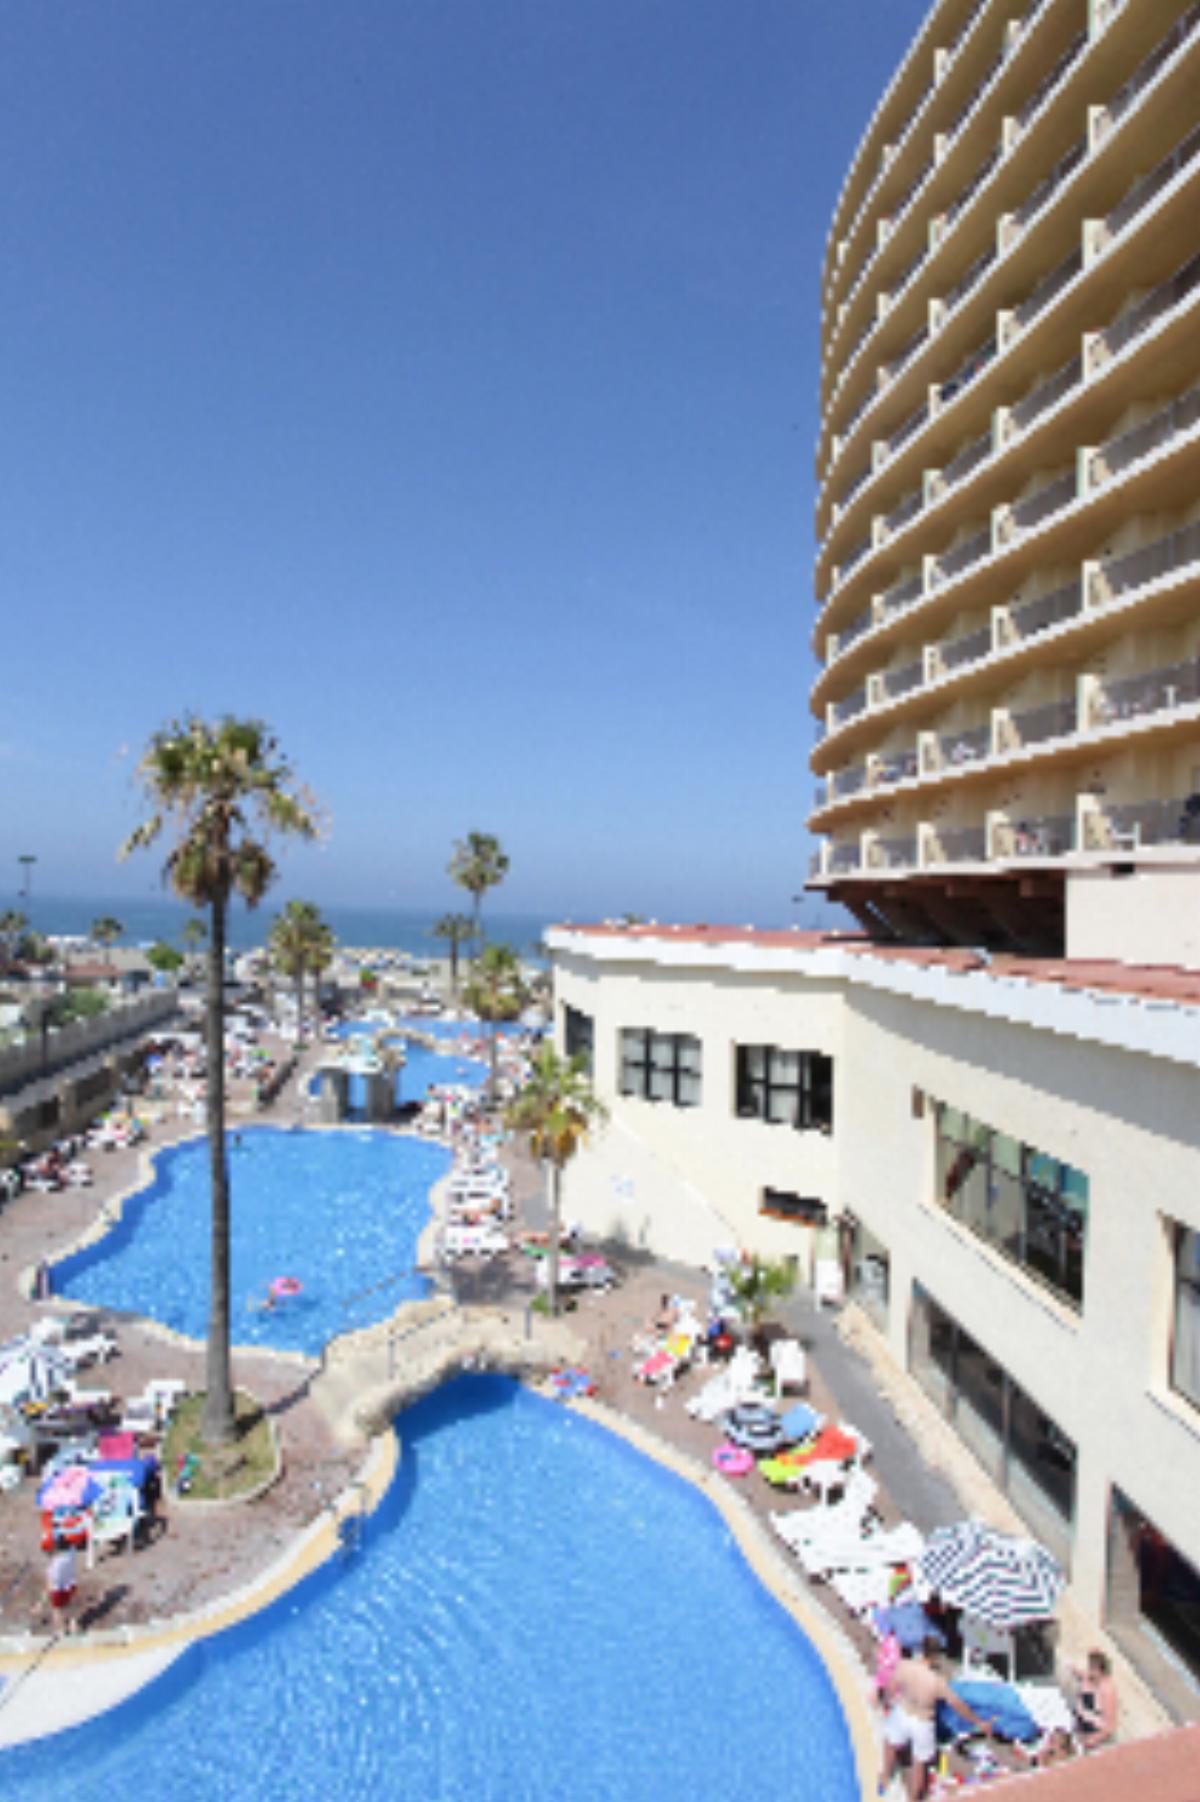 Torremolinos Beach Club Hotel Costa Del Sol Spain